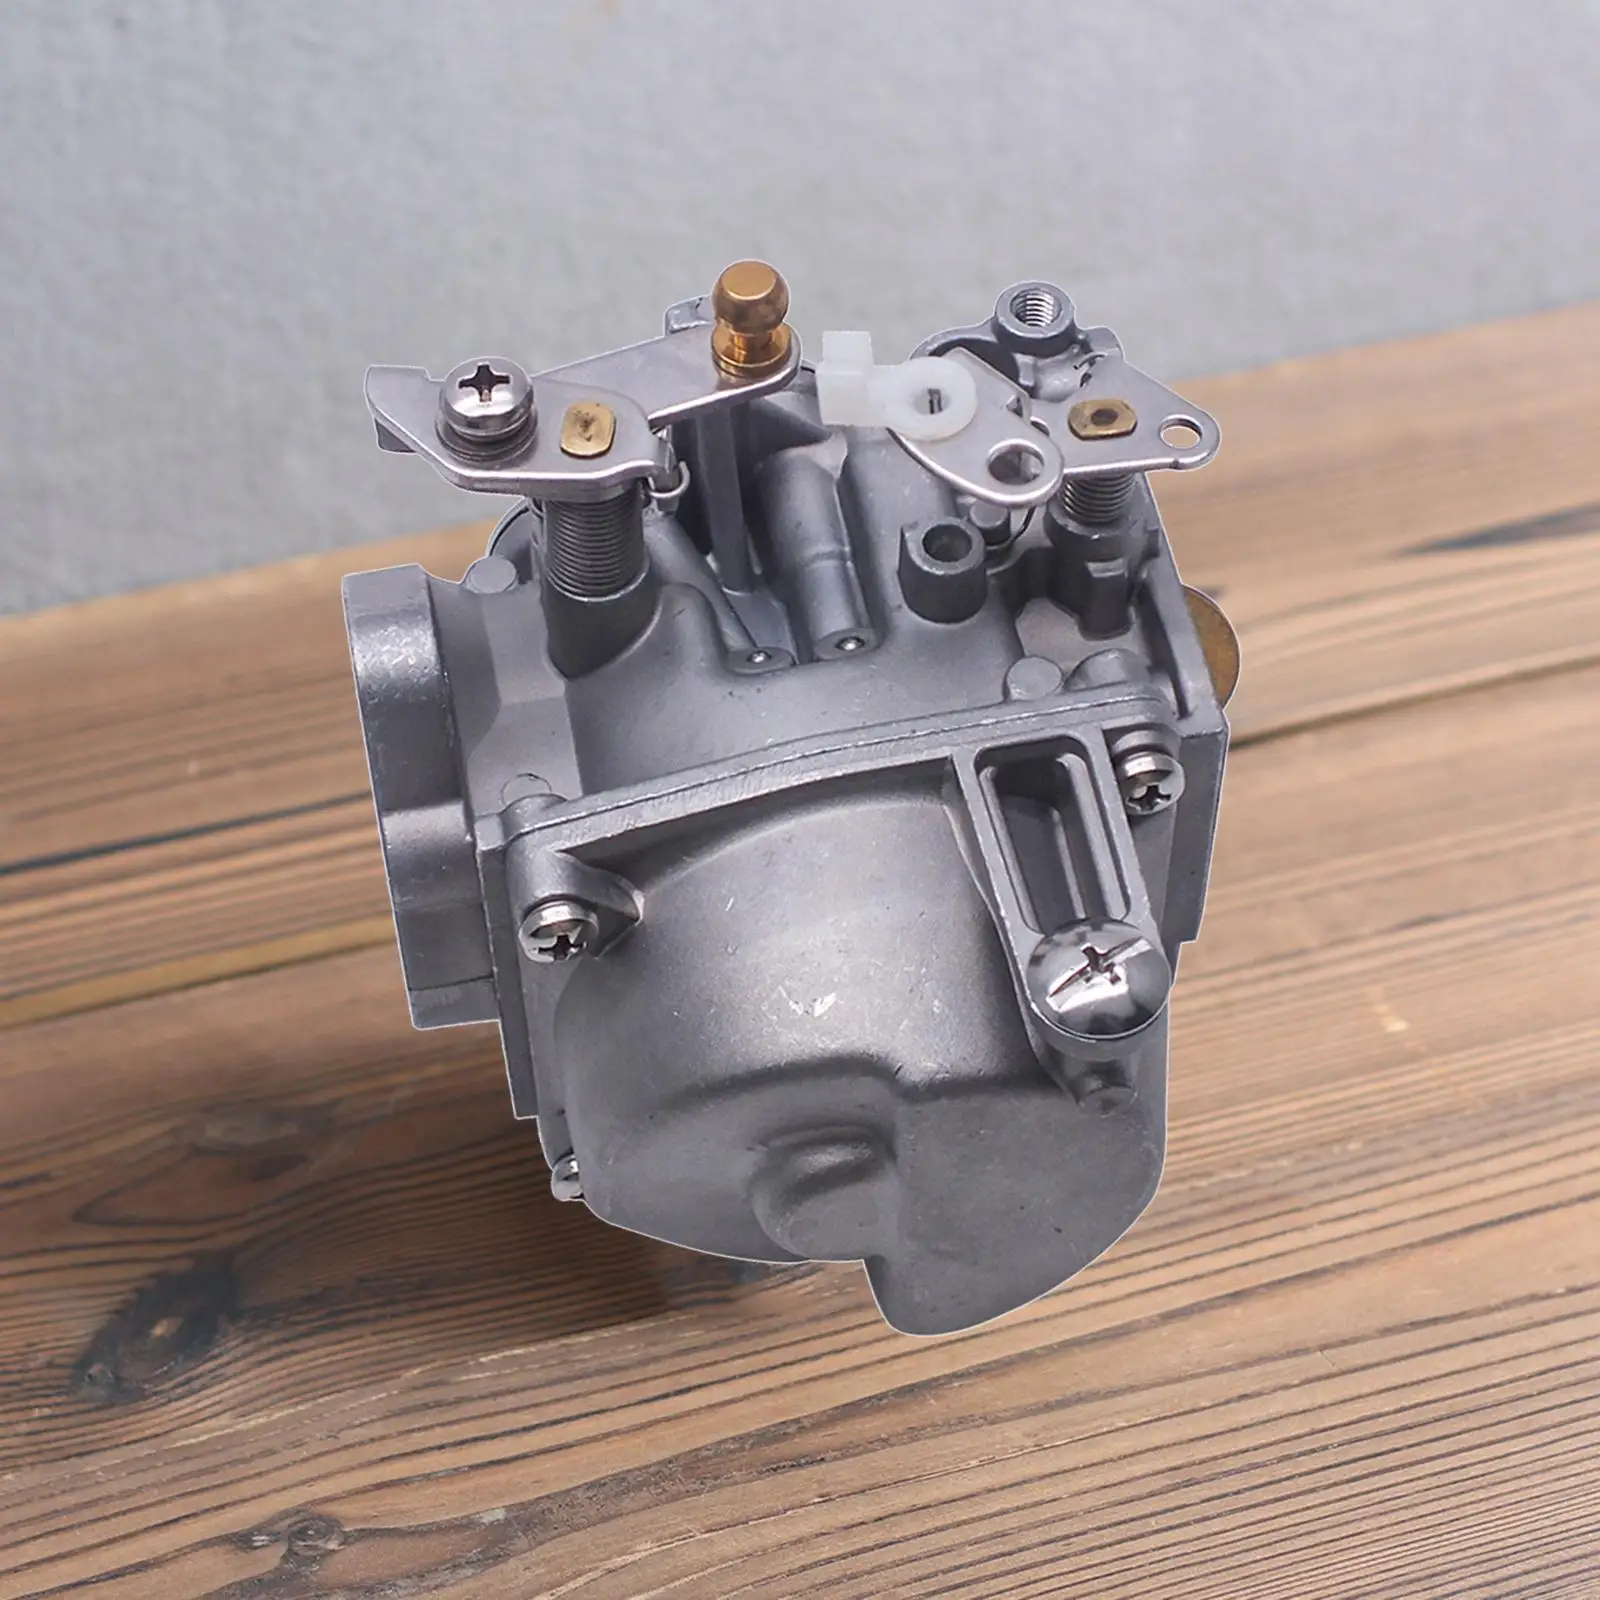 Carburetor Assembly for Yamaha 3-cylinder 85 HP 2-Stroke Outboard Engine